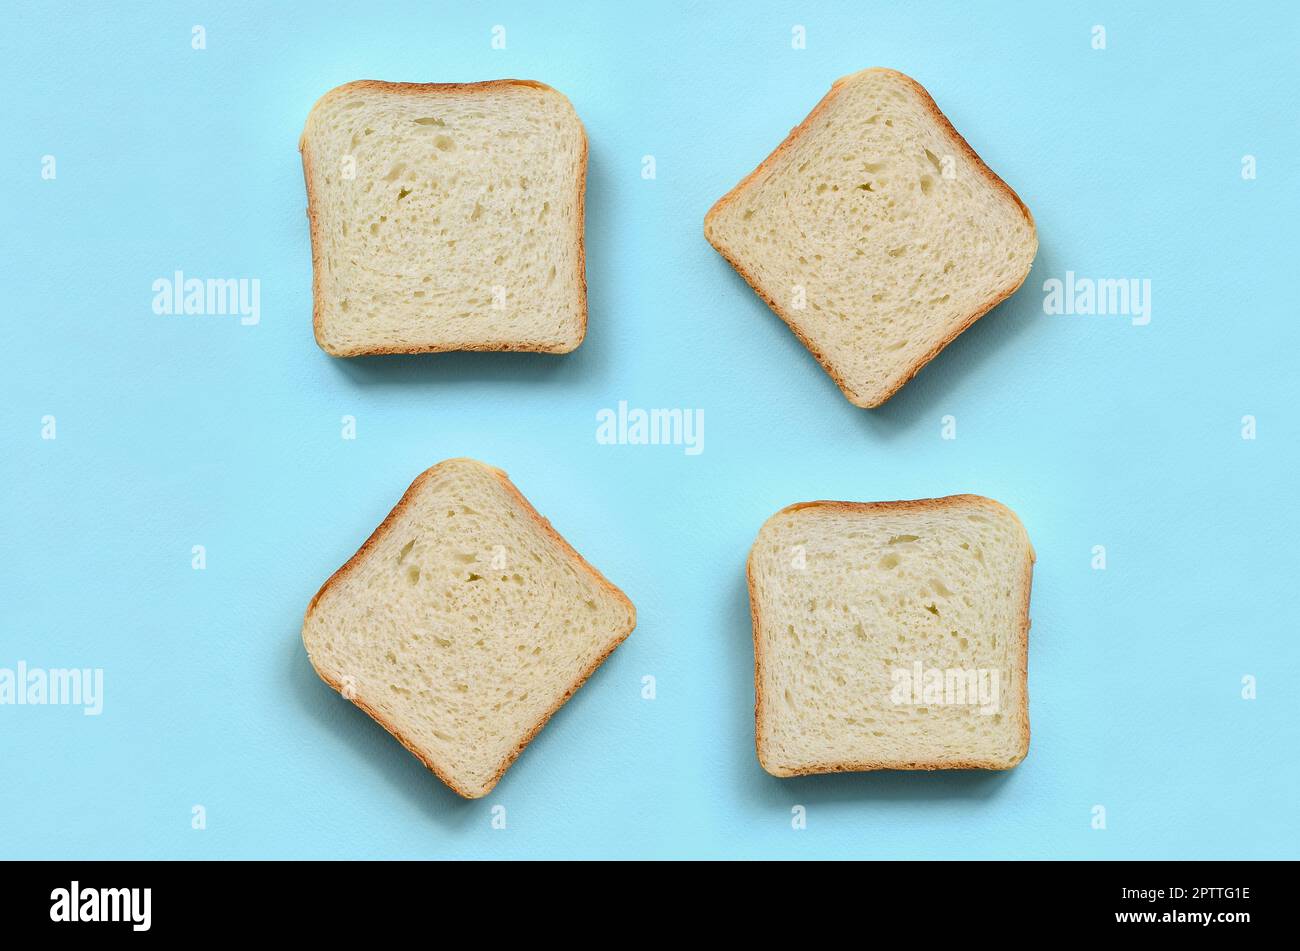 Ein paar Stücke Brot liegt auf Textur Hintergrund der Mode pastell-blaue Farbe Papier in minimalen Begriff. Stockfoto